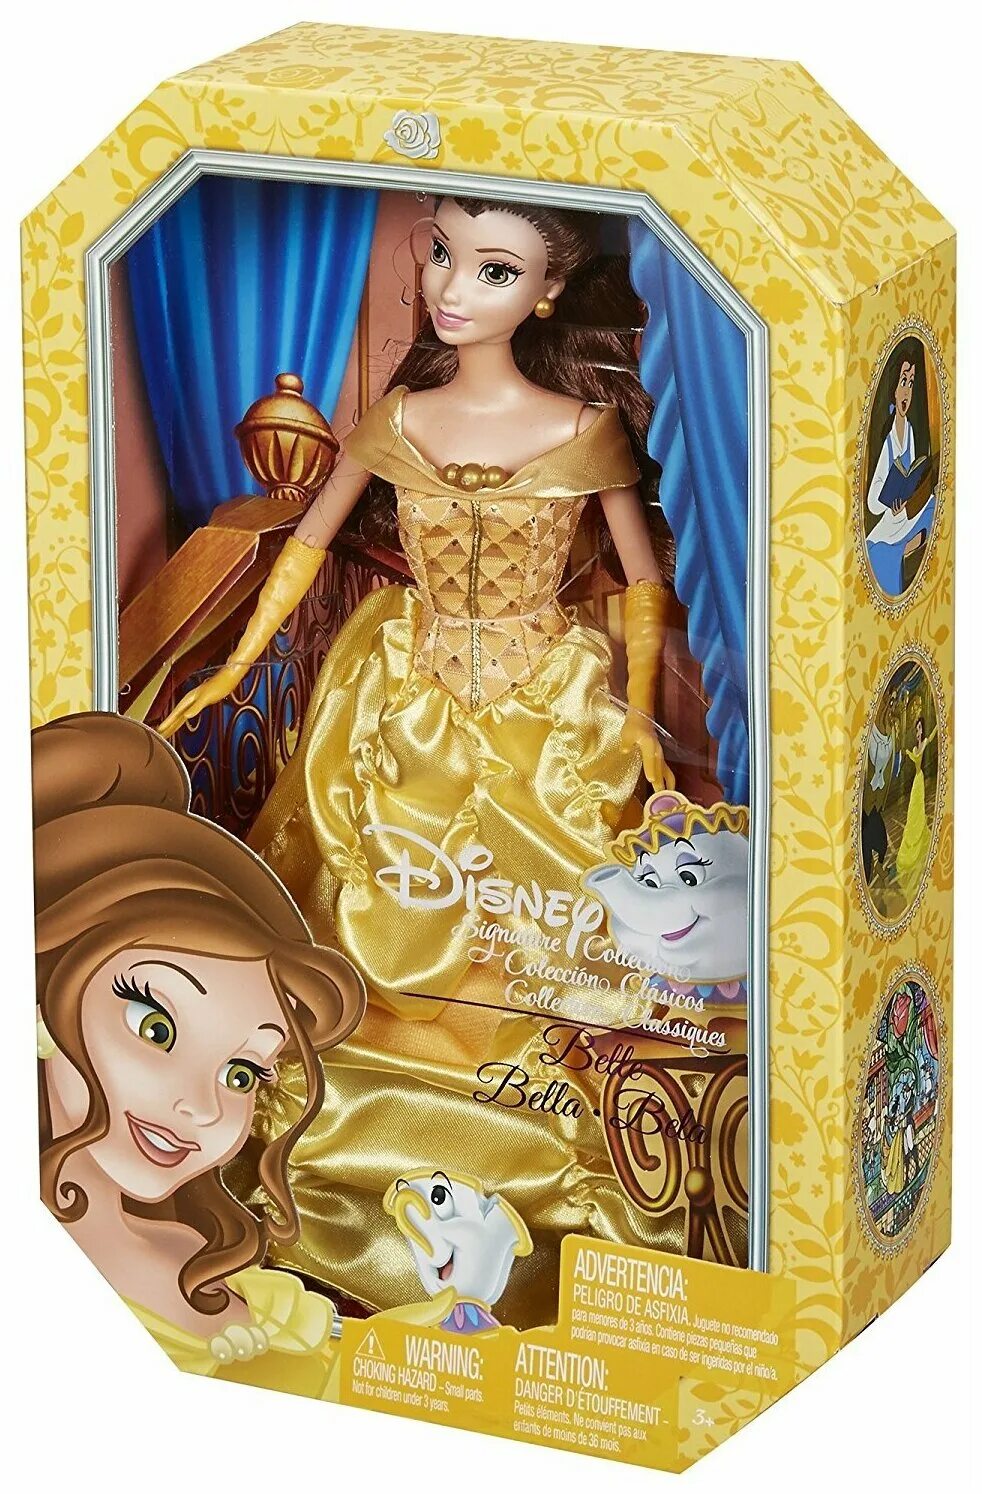 Цена диснея. Кукла Дисней Бэль Бель. Куклы принцессы Дисней Белль. Кукла Disney Princess принцесса Дисней Белль. Mattel cdb51 коллекционная кукла принцесса Диснея Белль,.